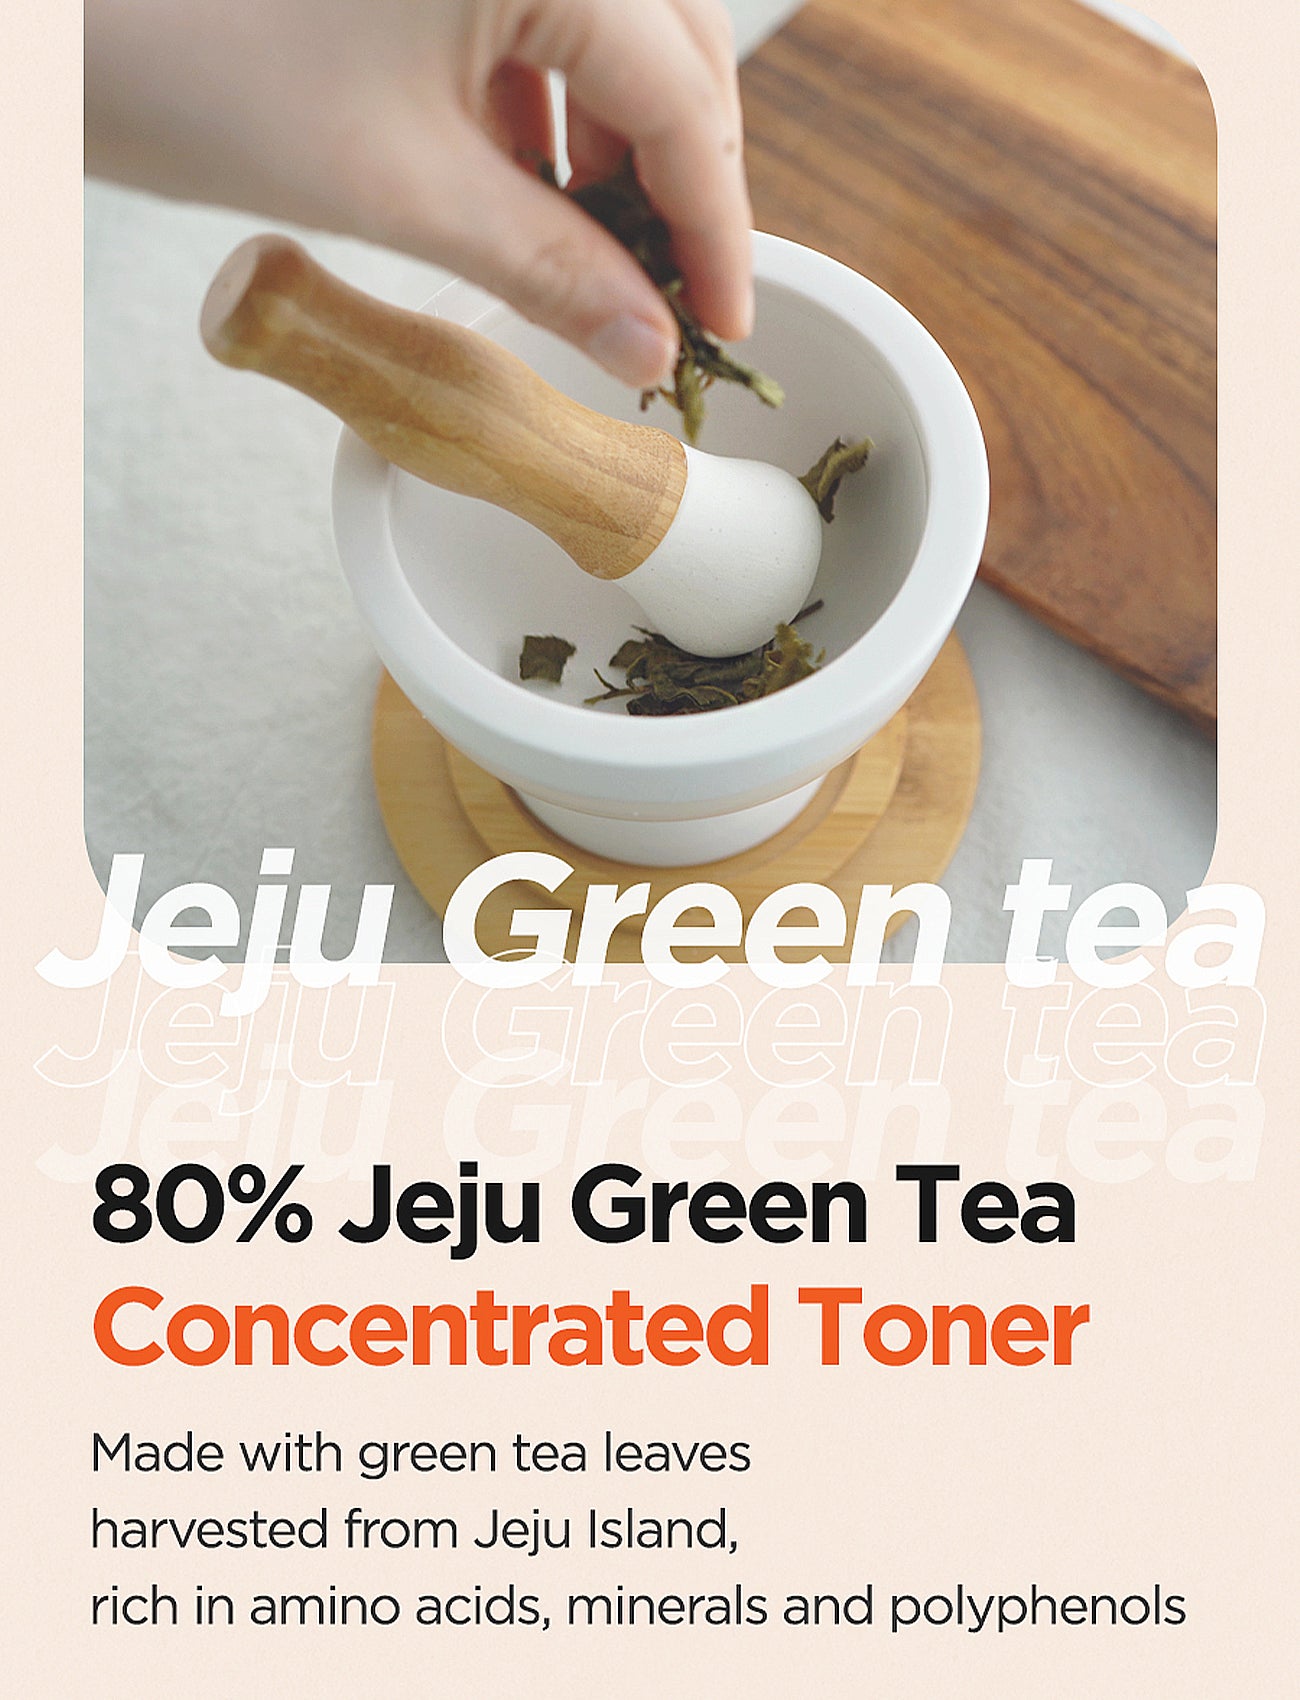 Green Tea Fresh Toner